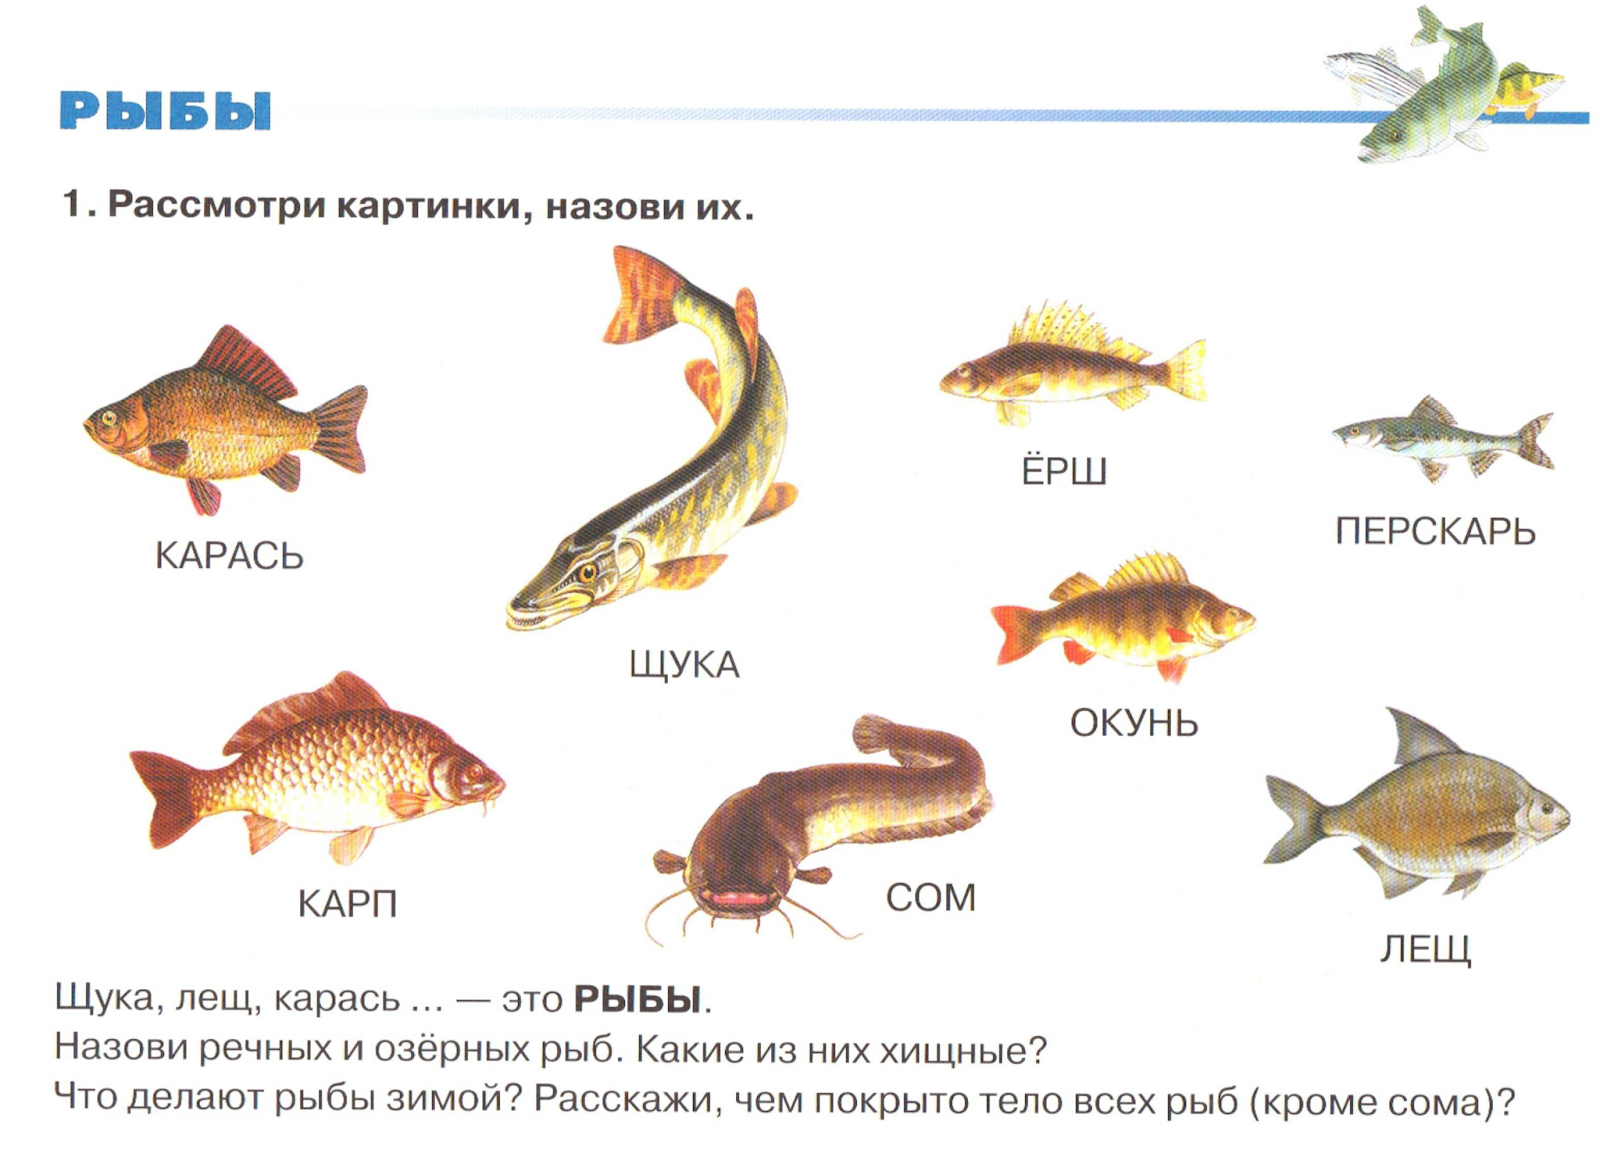 Как выбрать аквариум для рыбок